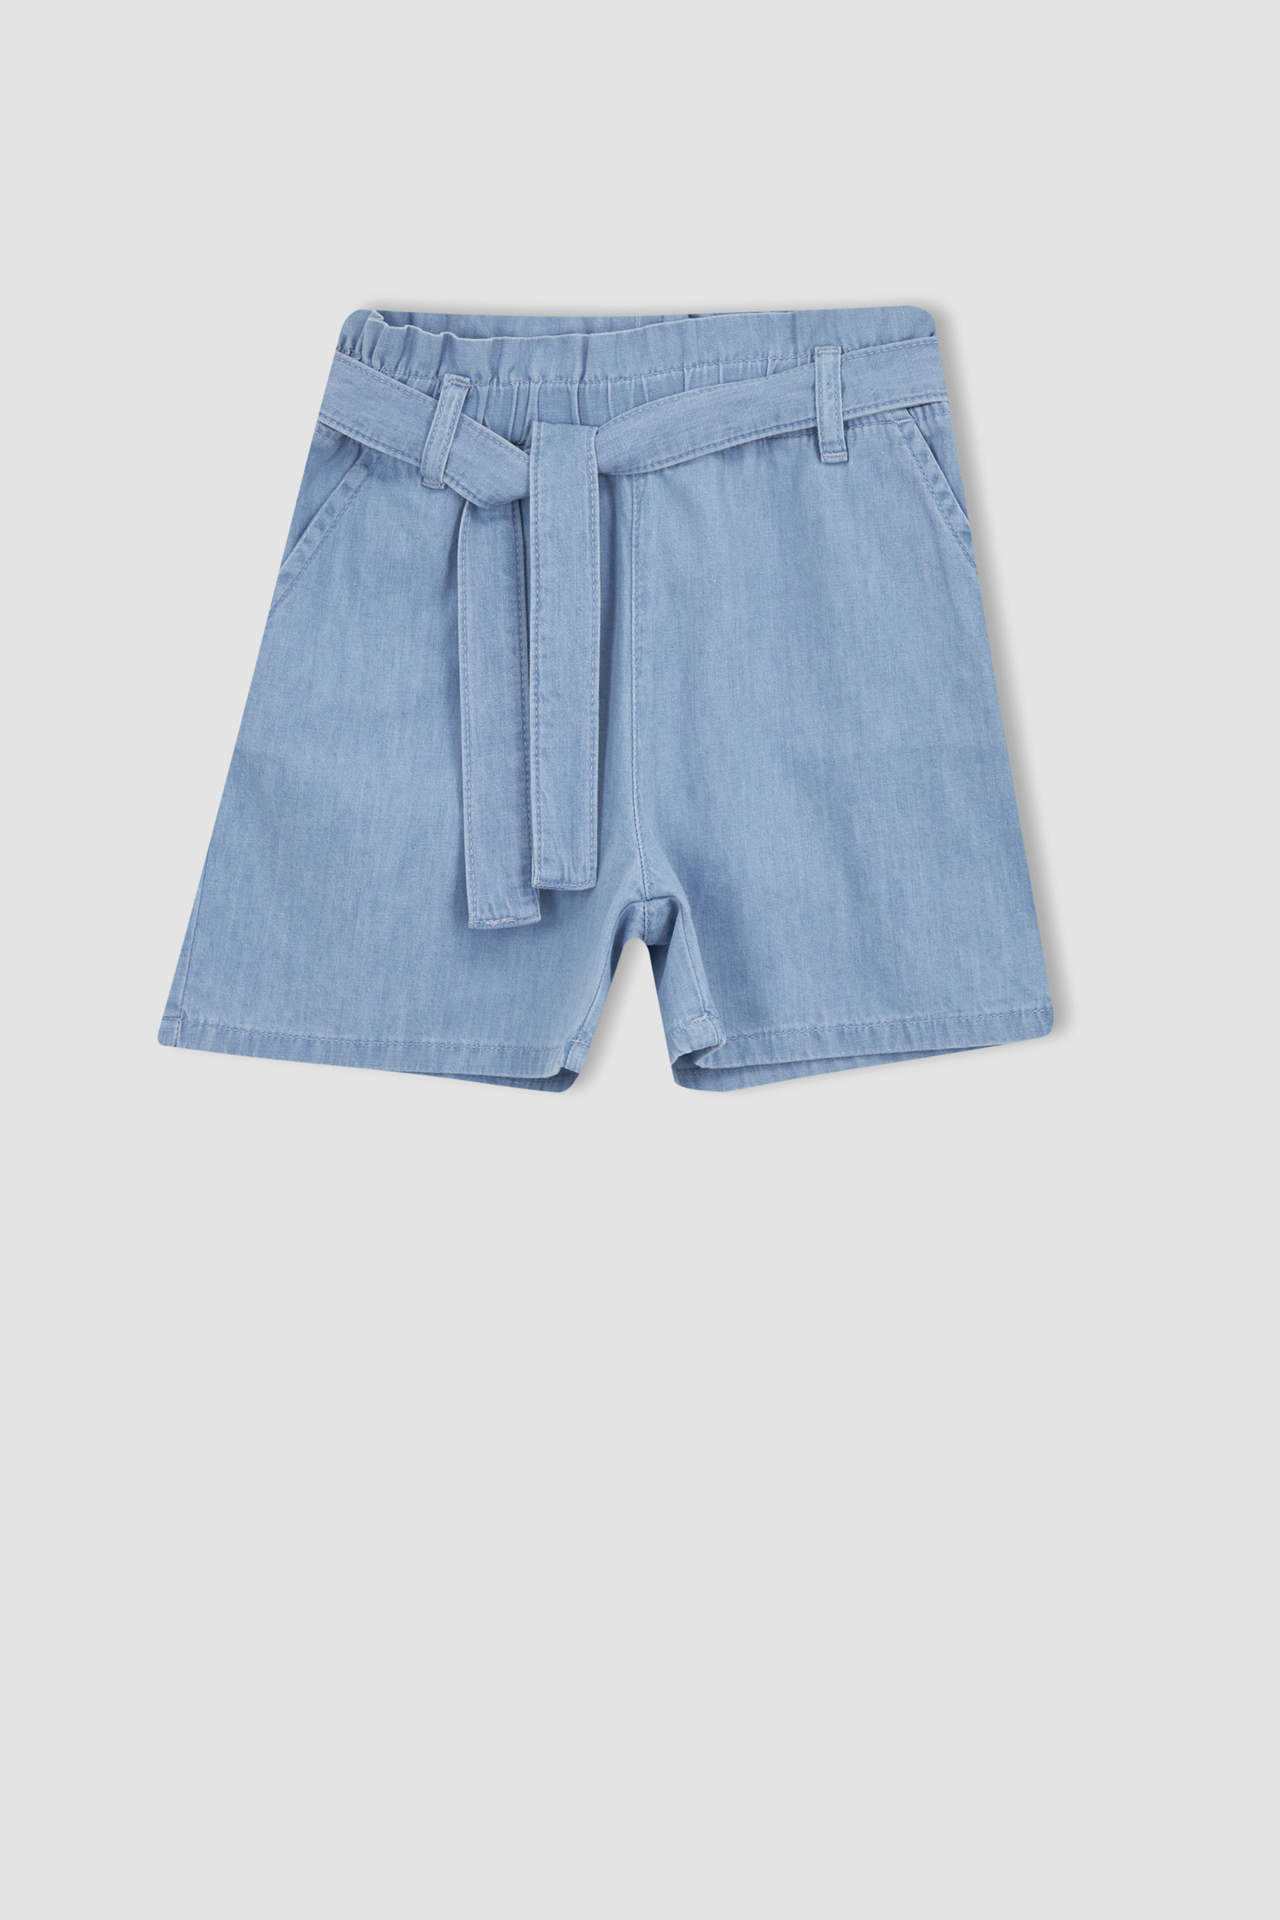 Levně DEFACTO Girl Paperbag Elastic Waist Belted Jean Shorts